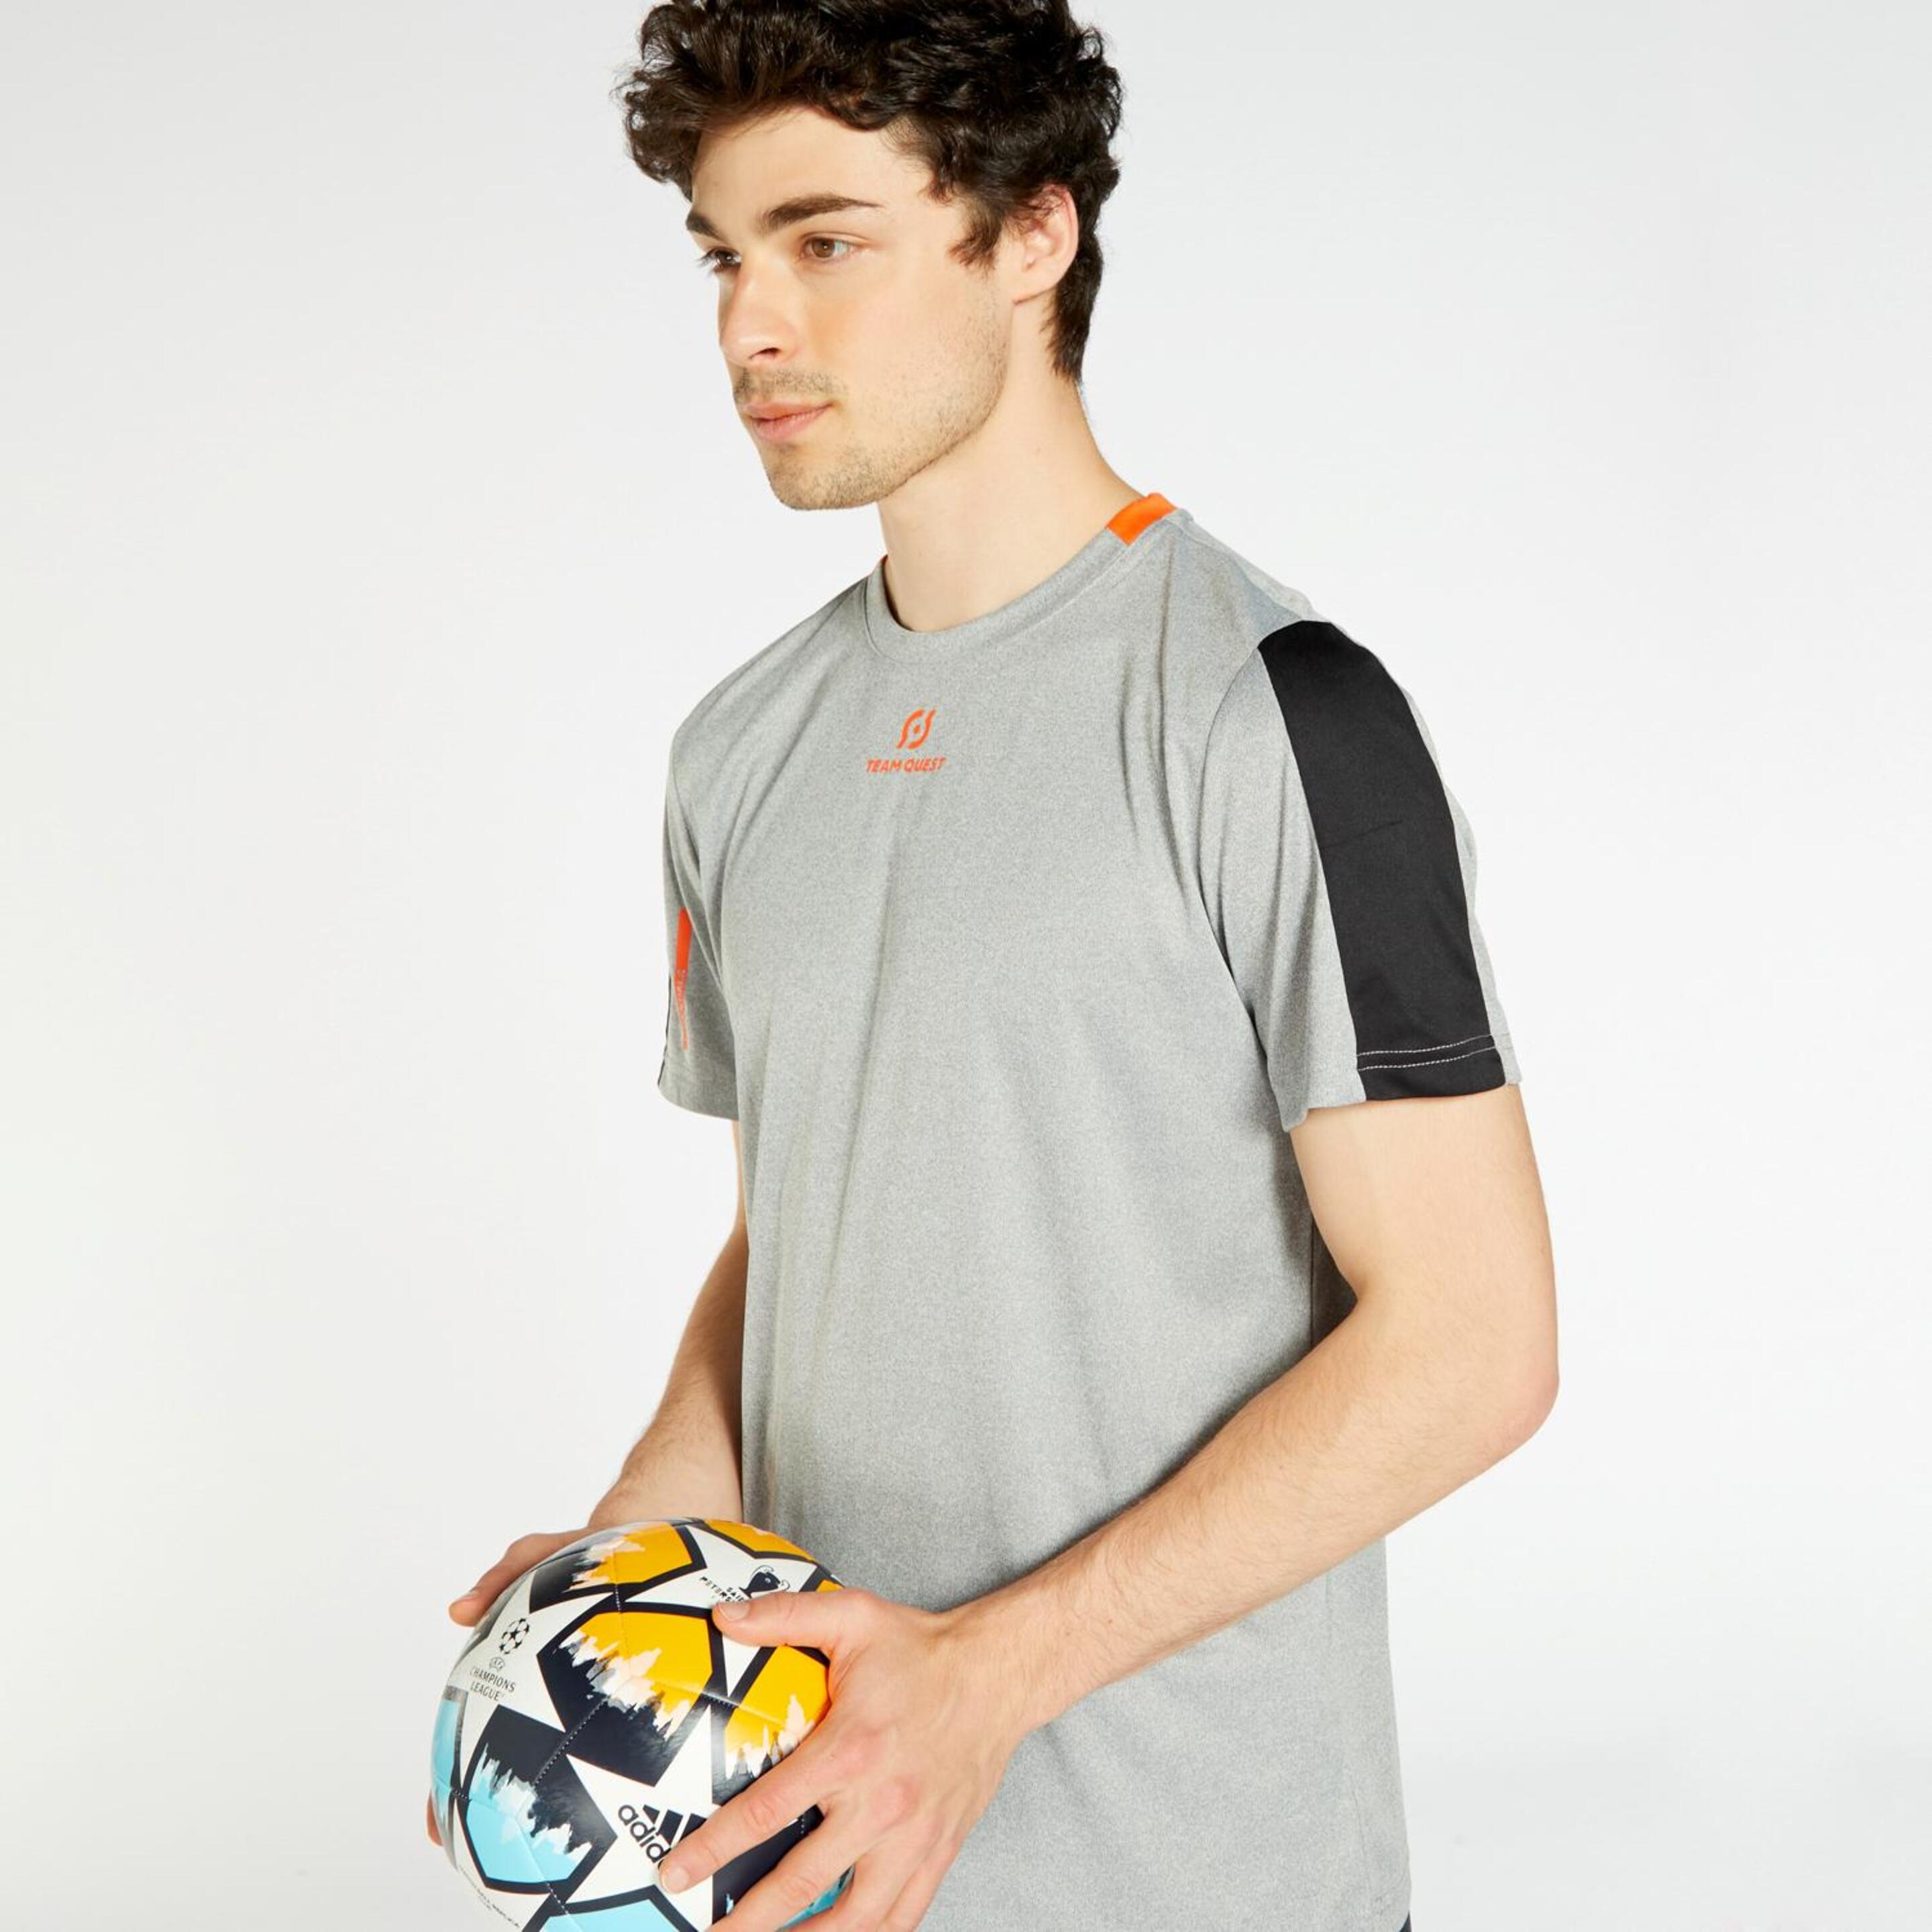 Team Quest Basics - gris - Camiseta Fútbol Hombre